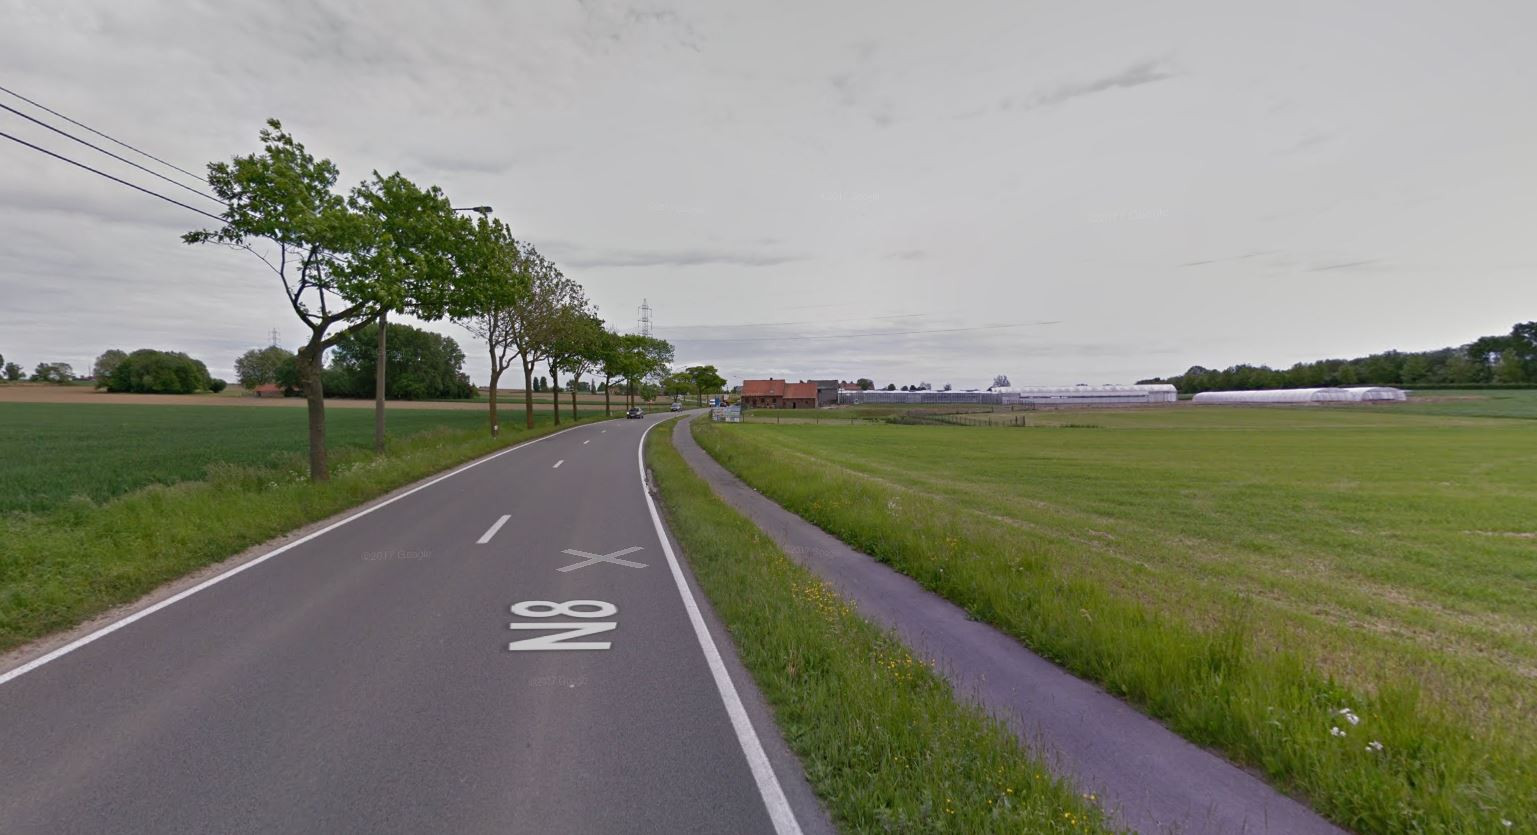 De N8 tussen Avelgem en Zwevegem, een gevaarlijke bochtige weg waar wel vaker zware ongevallen gebeuren.